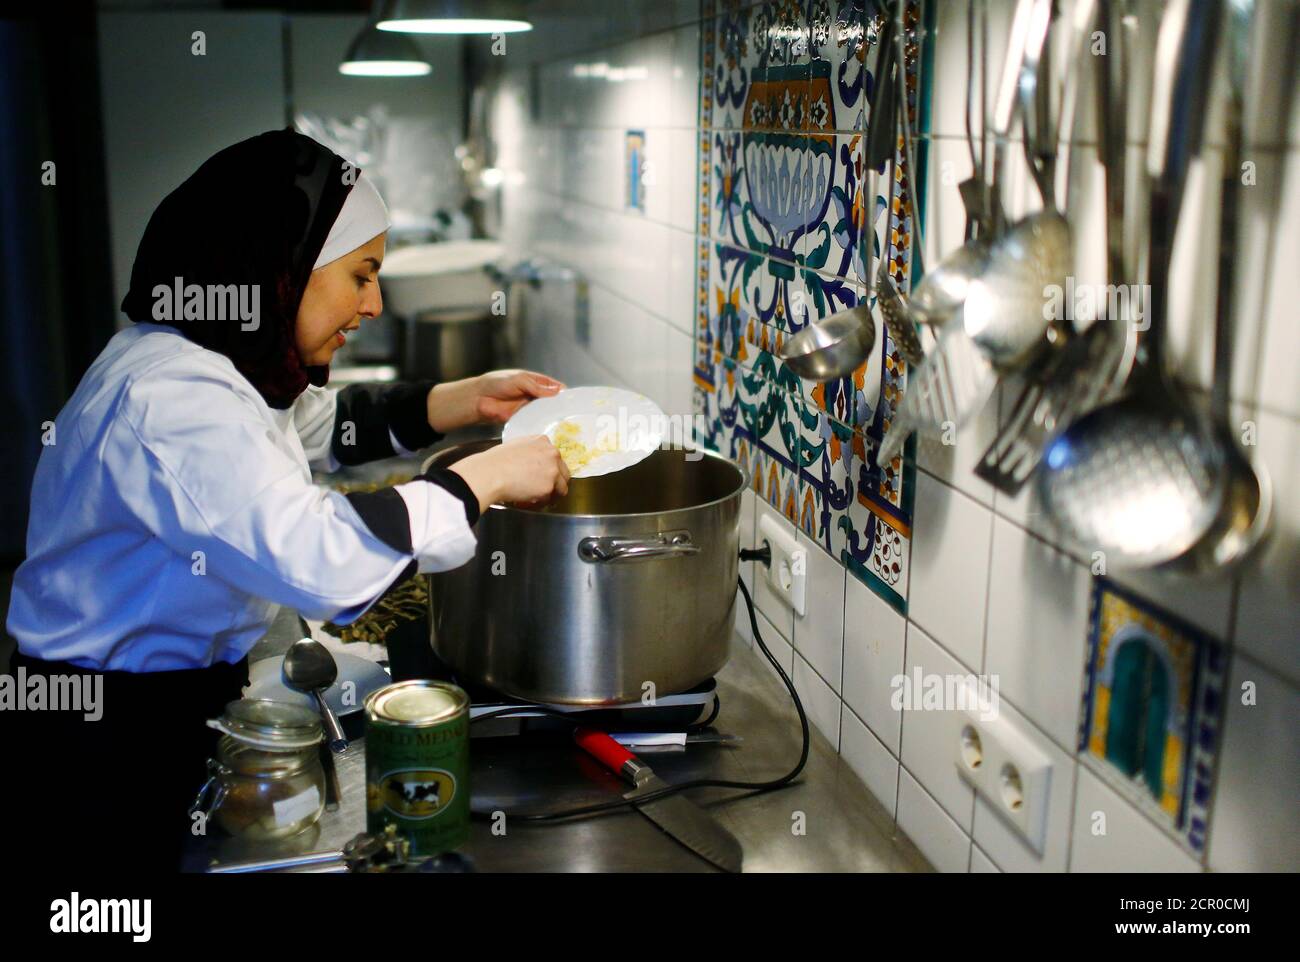 Le migrant syrien Malakeh Jazmati cuisine dans une cuisine de café à Berlin, Allemagne le 23 janvier 2018. REUTERS/Hannibal Hanschke Banque D'Images